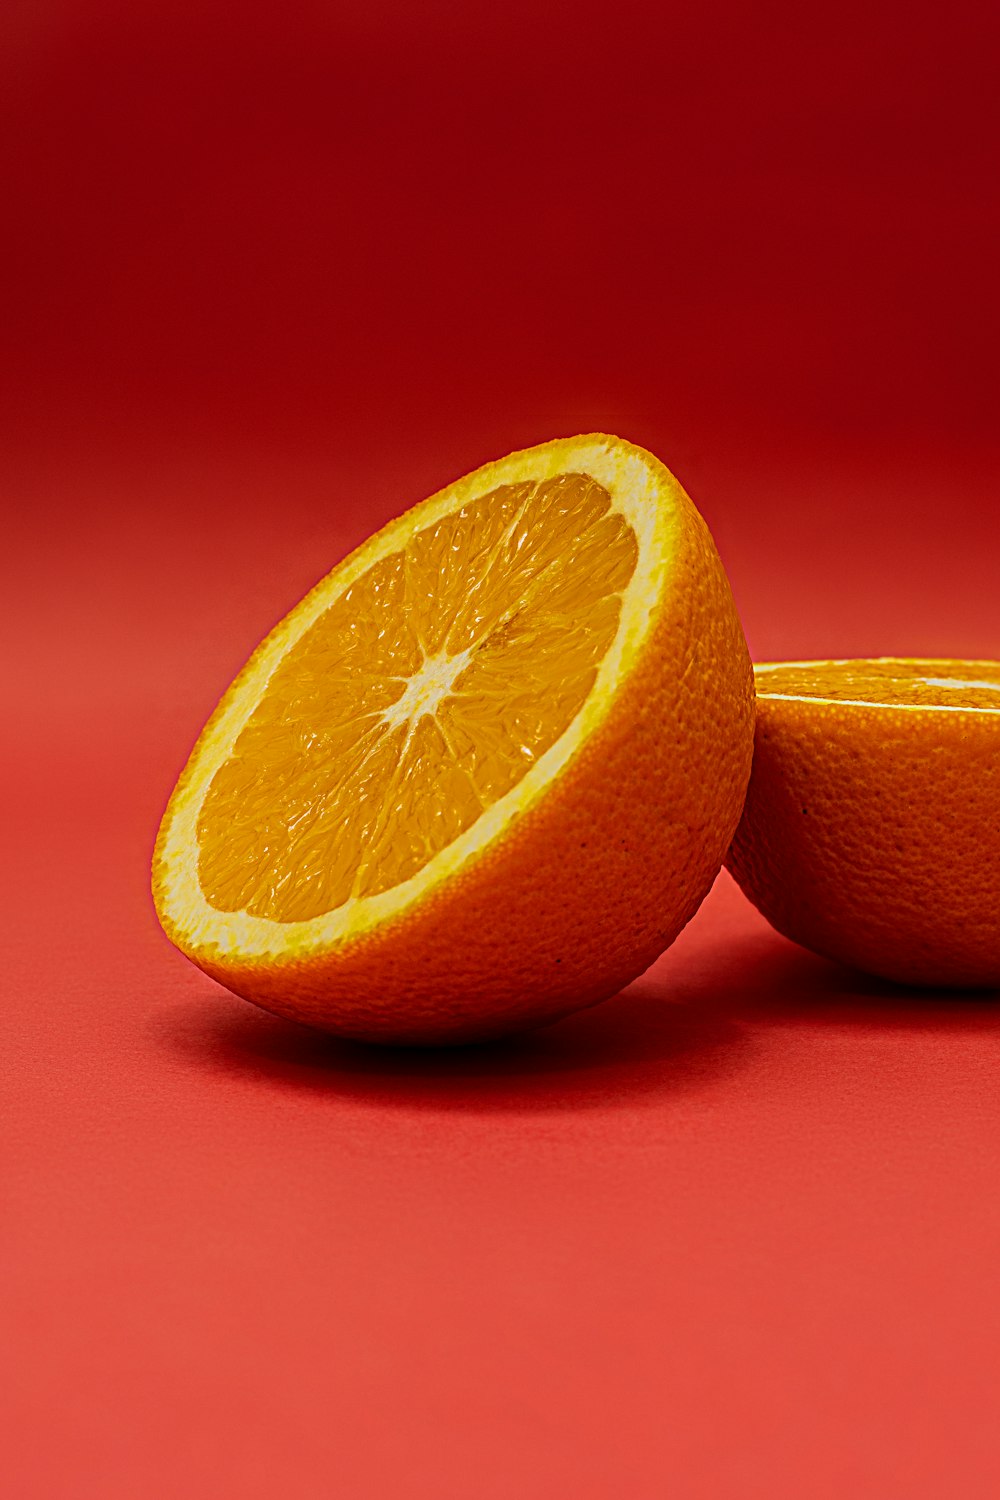 sliced orange fruit on red surface